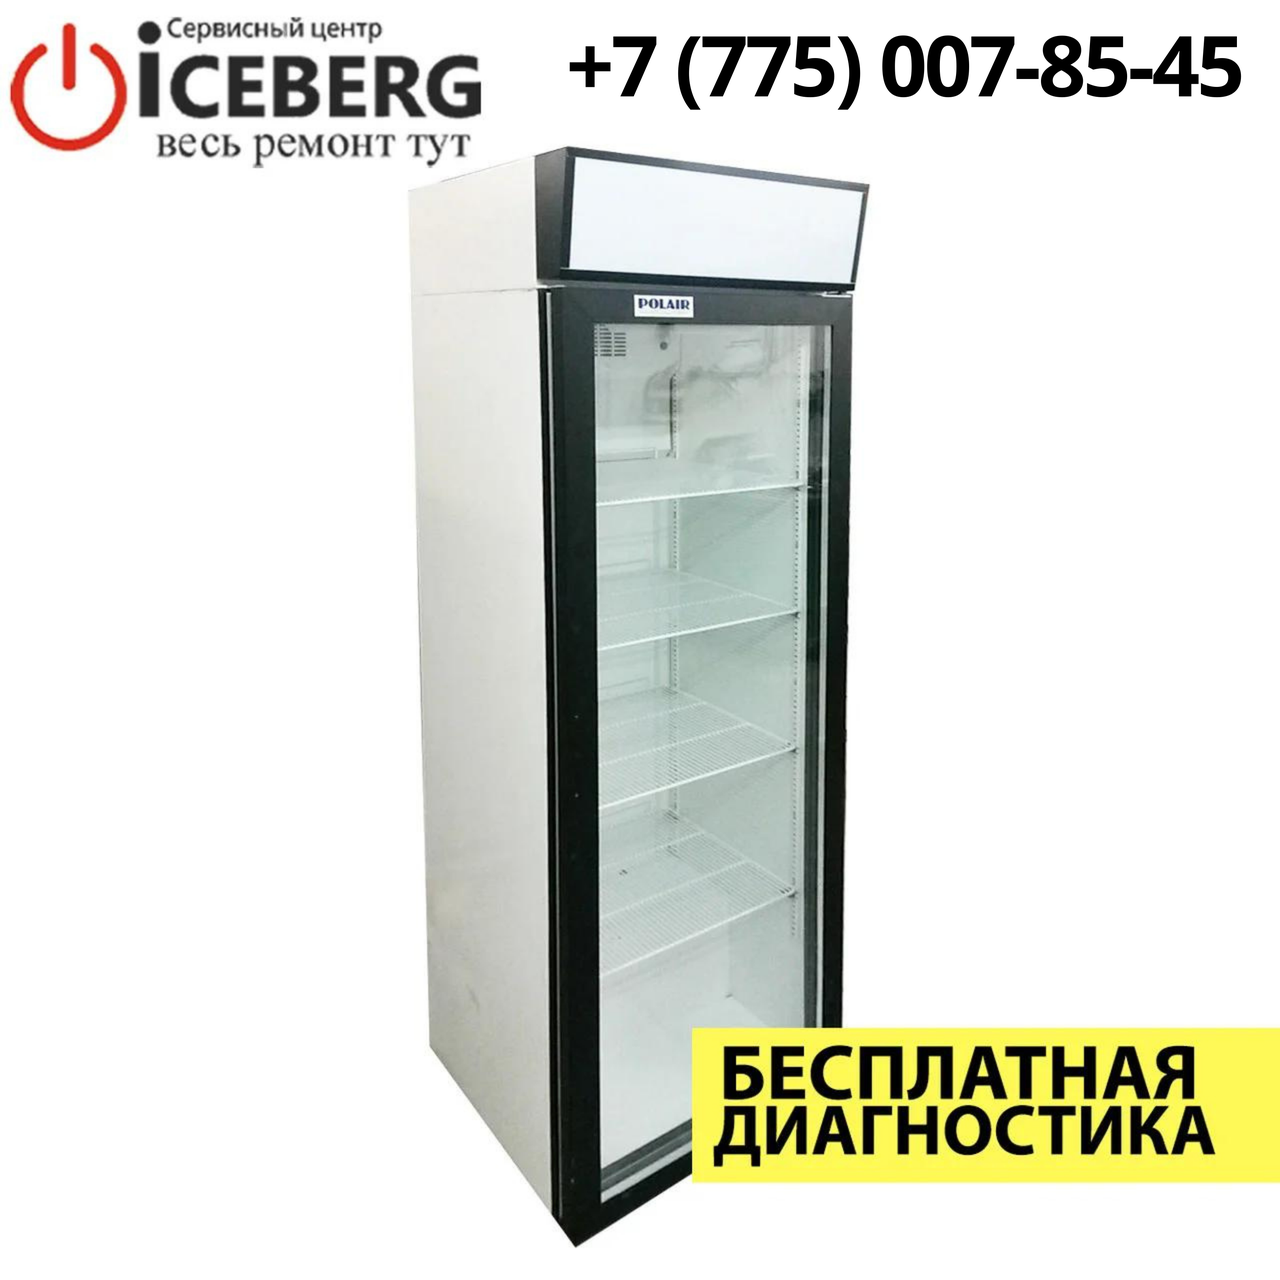 Ремонт торгового-промышленного холодильника Polair в Алматы